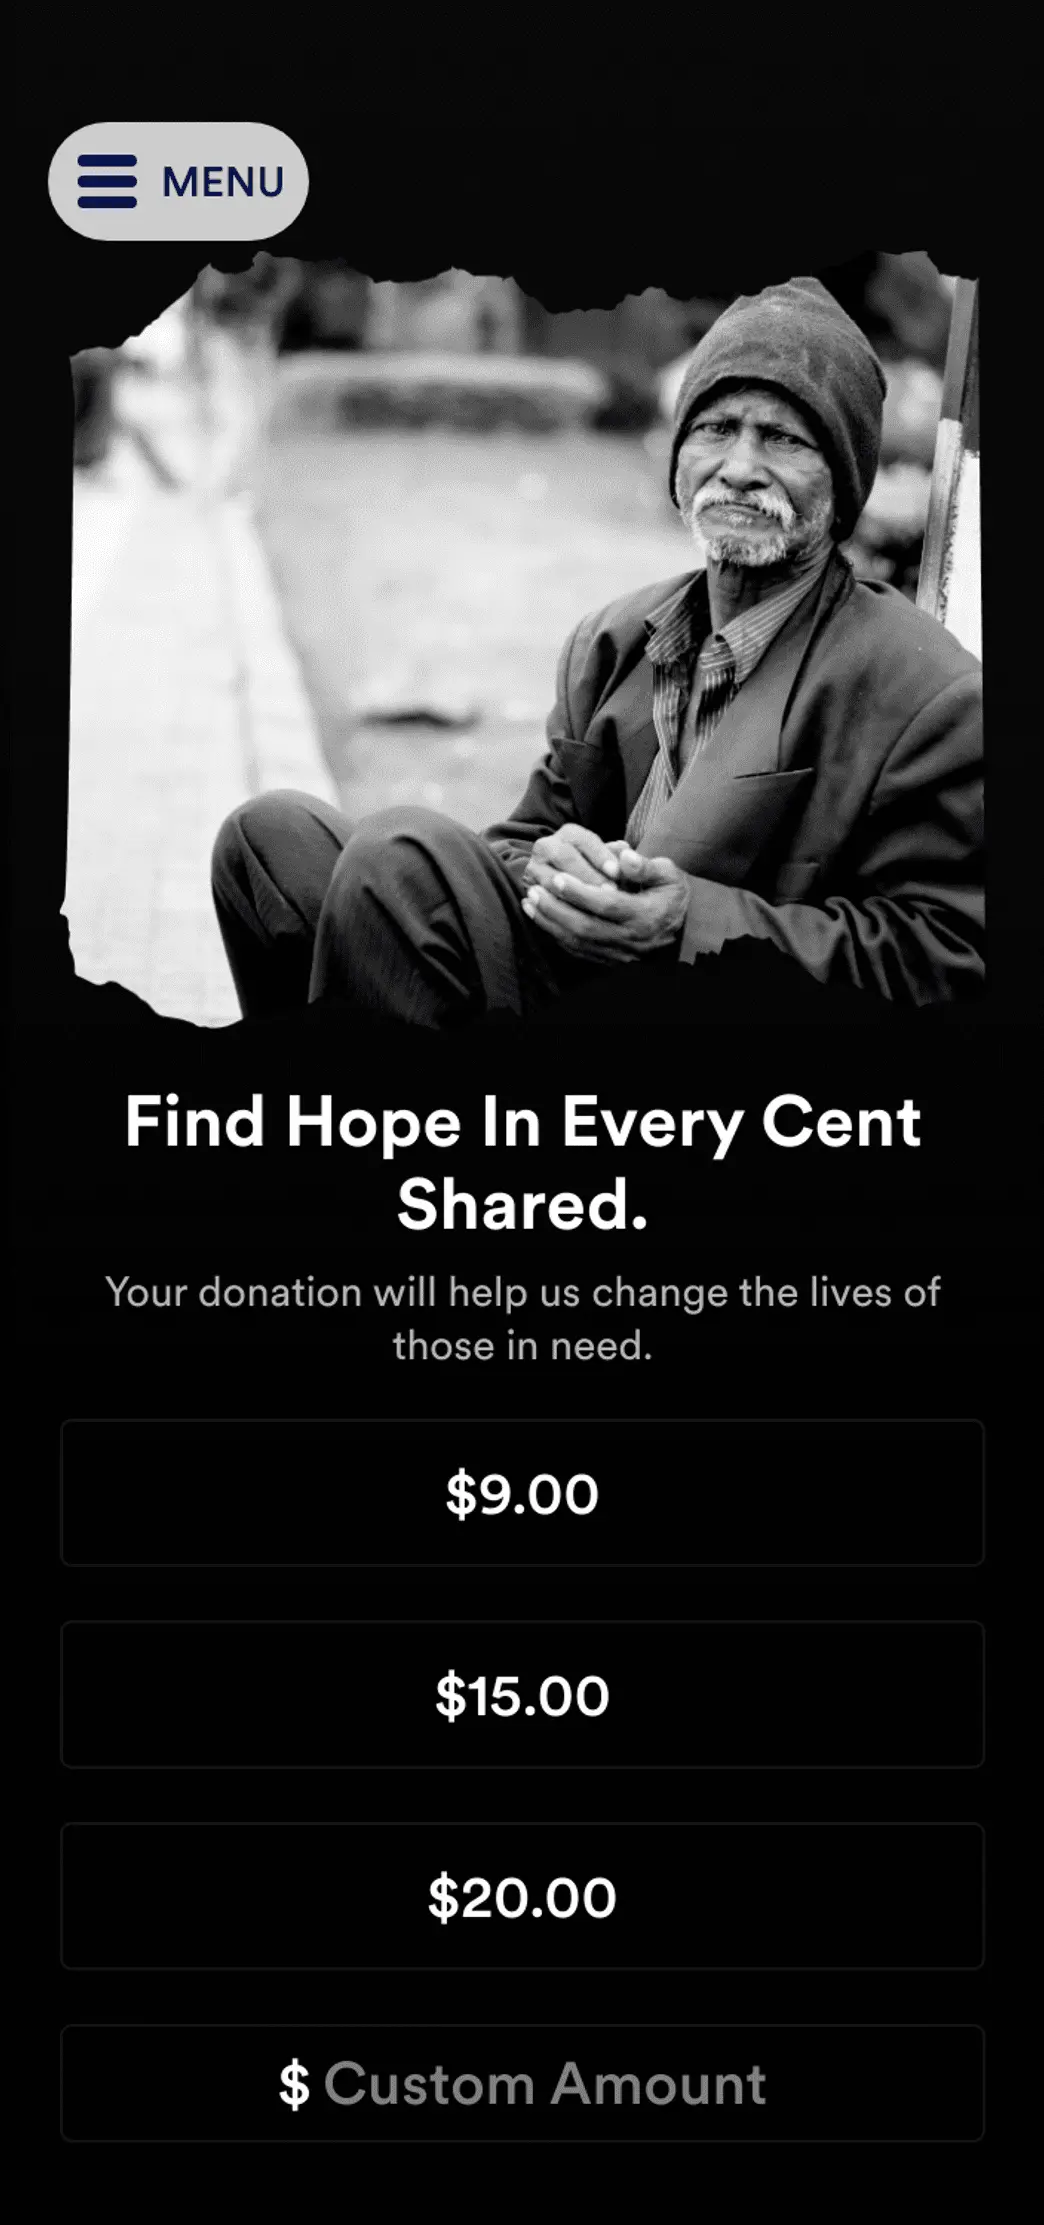 Homeless Donation App